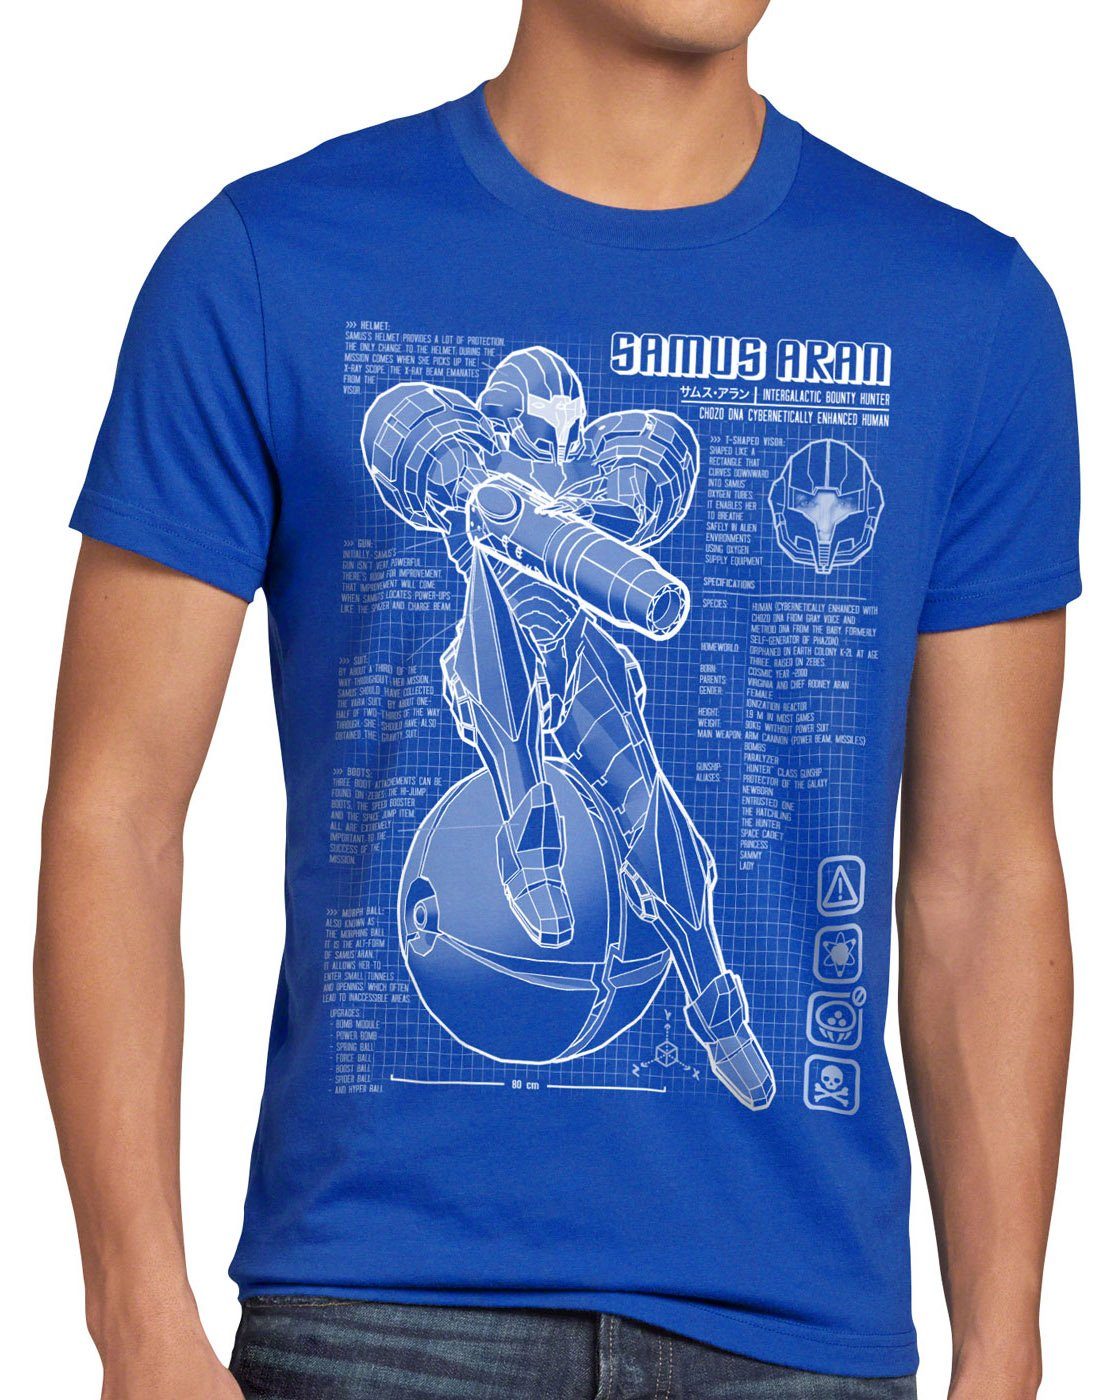 Samus Print-Shirt T-Shirt Blaupause Herren snes switch style3 metroid nerd nes gamer